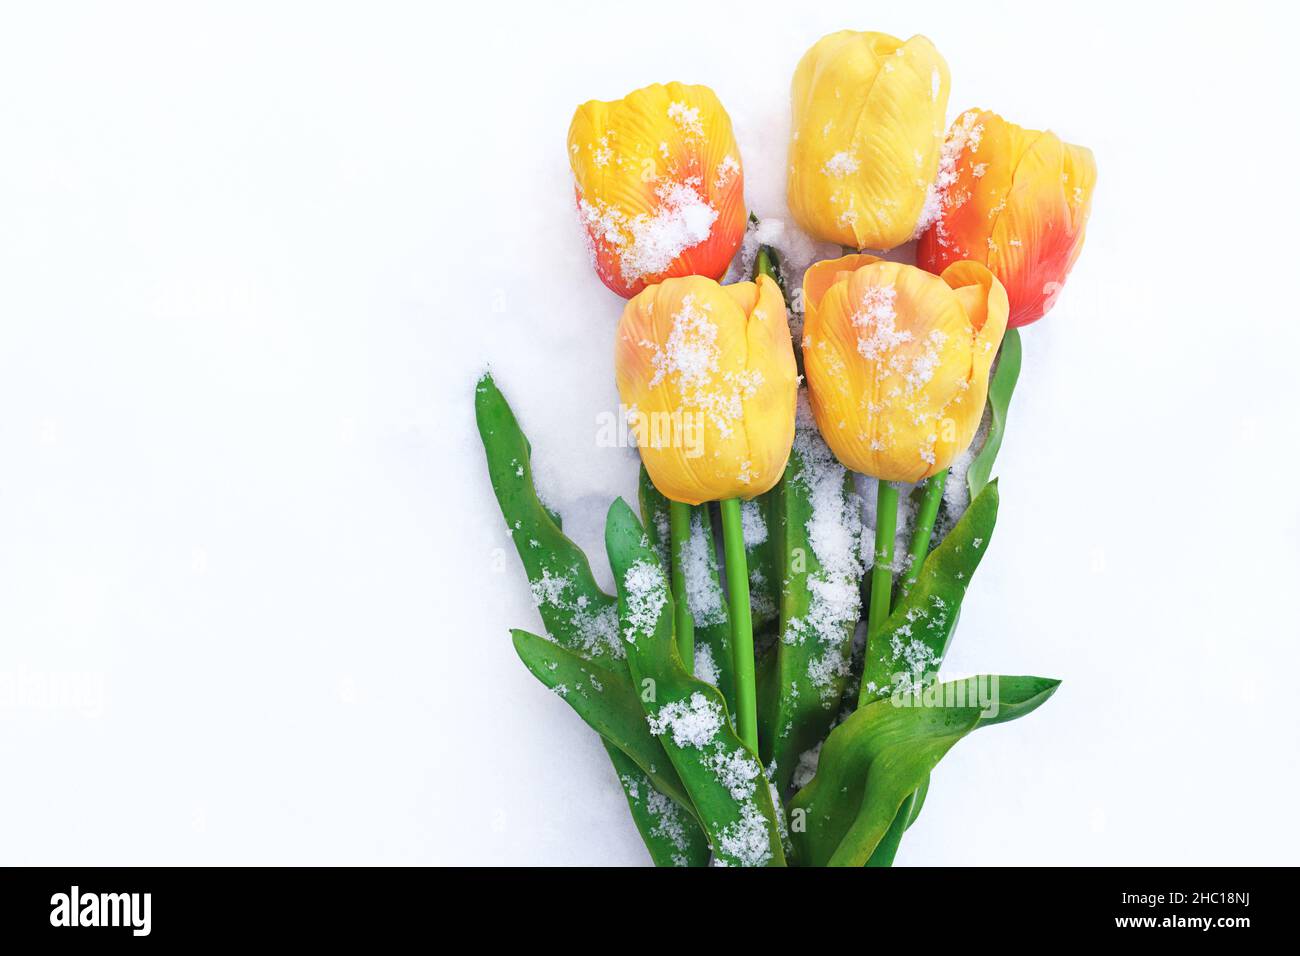 Tulipes jaunes dans la neige.Fond festif.Fête des mères, Journée internationale de la femme, anniversaire, 8 mars, Saint-Valentin.Copier l'espace Banque D'Images